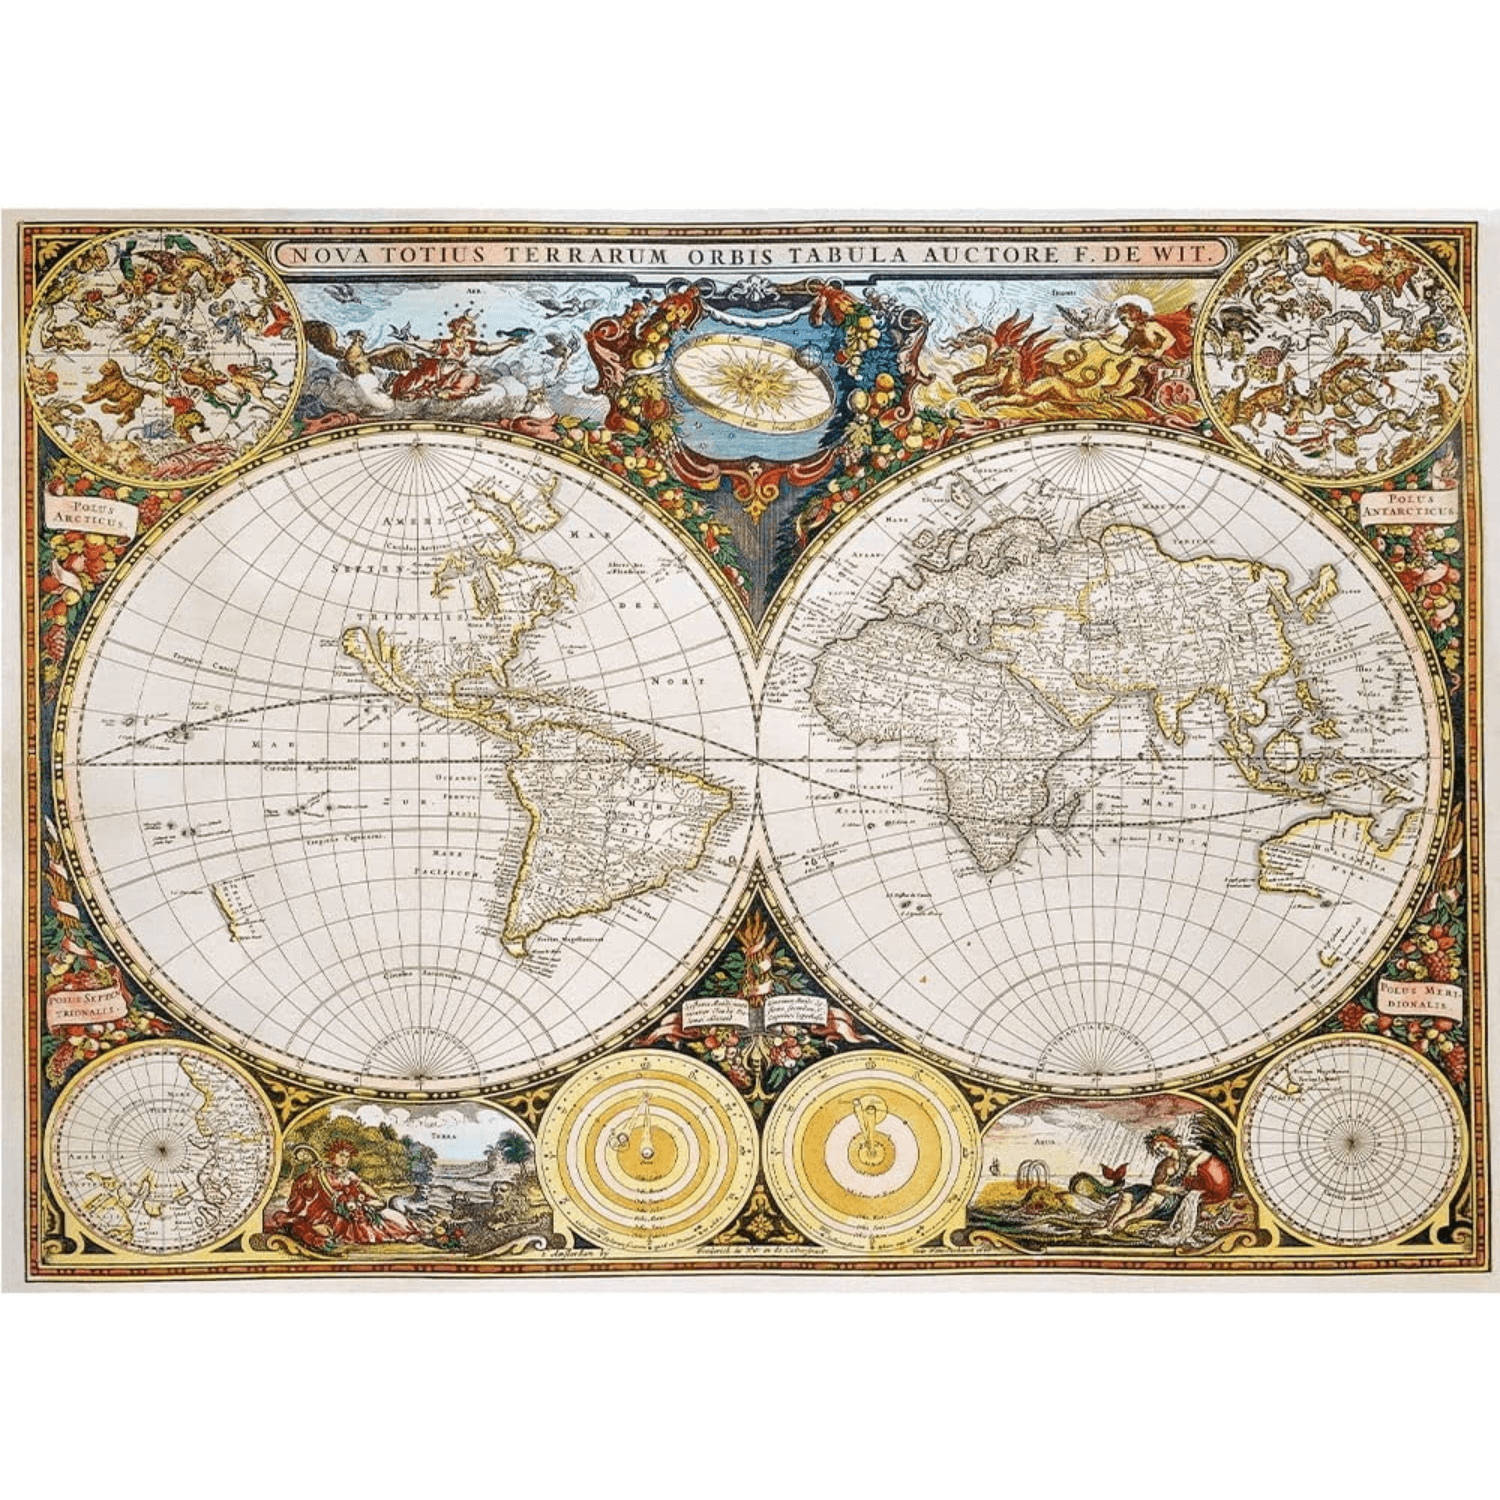 Antieke wereldkaart | houten puzzel 1000 houten puzzel-TREFL--